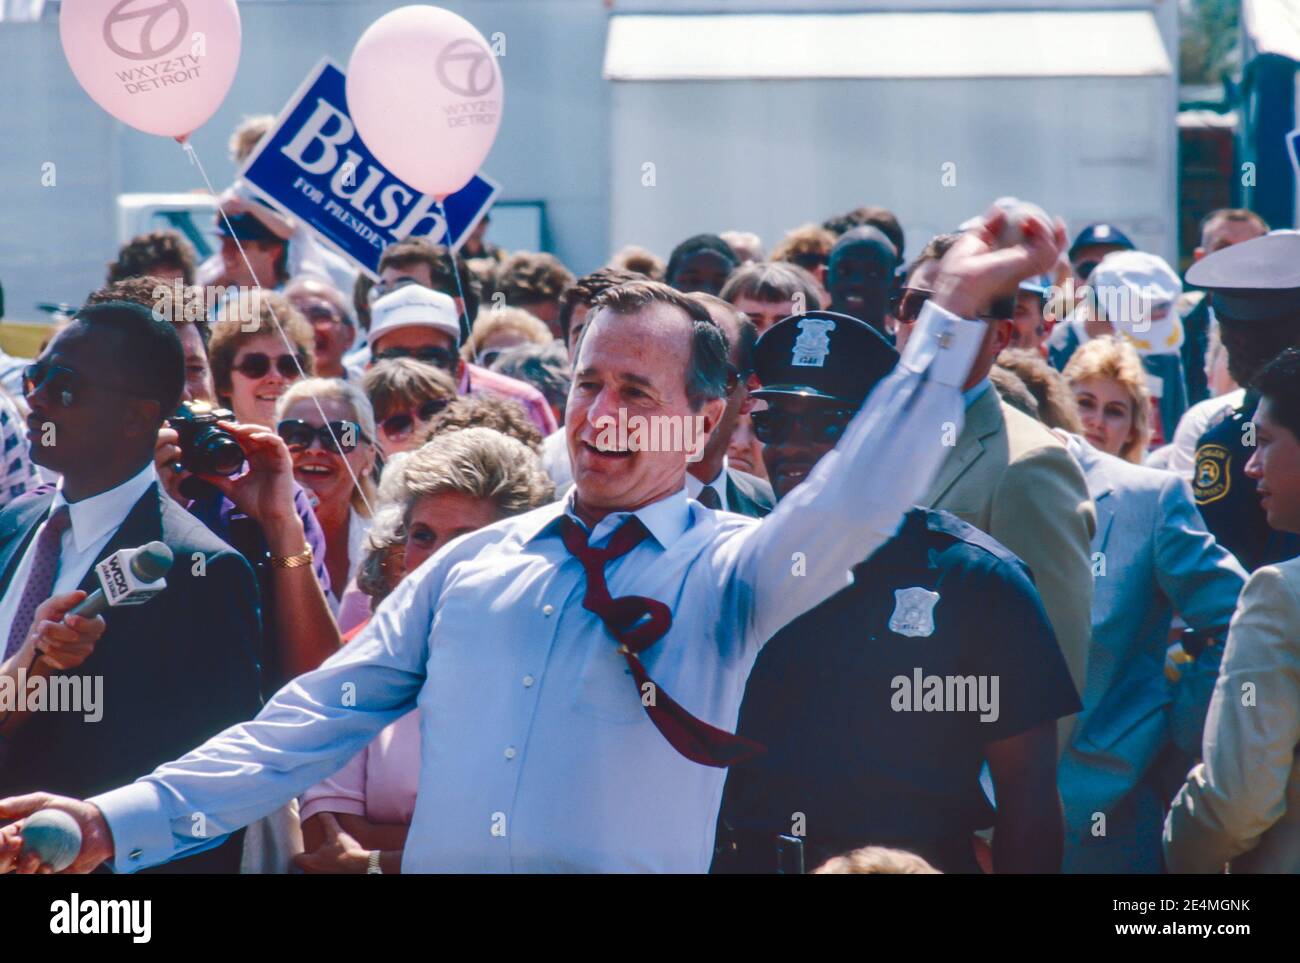 Detroit, Michigan - George H. W. Bush visita la fiera statale del Michigan mentre si batte per il presidente. Sta gettando le palle per provare a bussare un pagliaccio in un serbatoio di acqua. Foto Stock